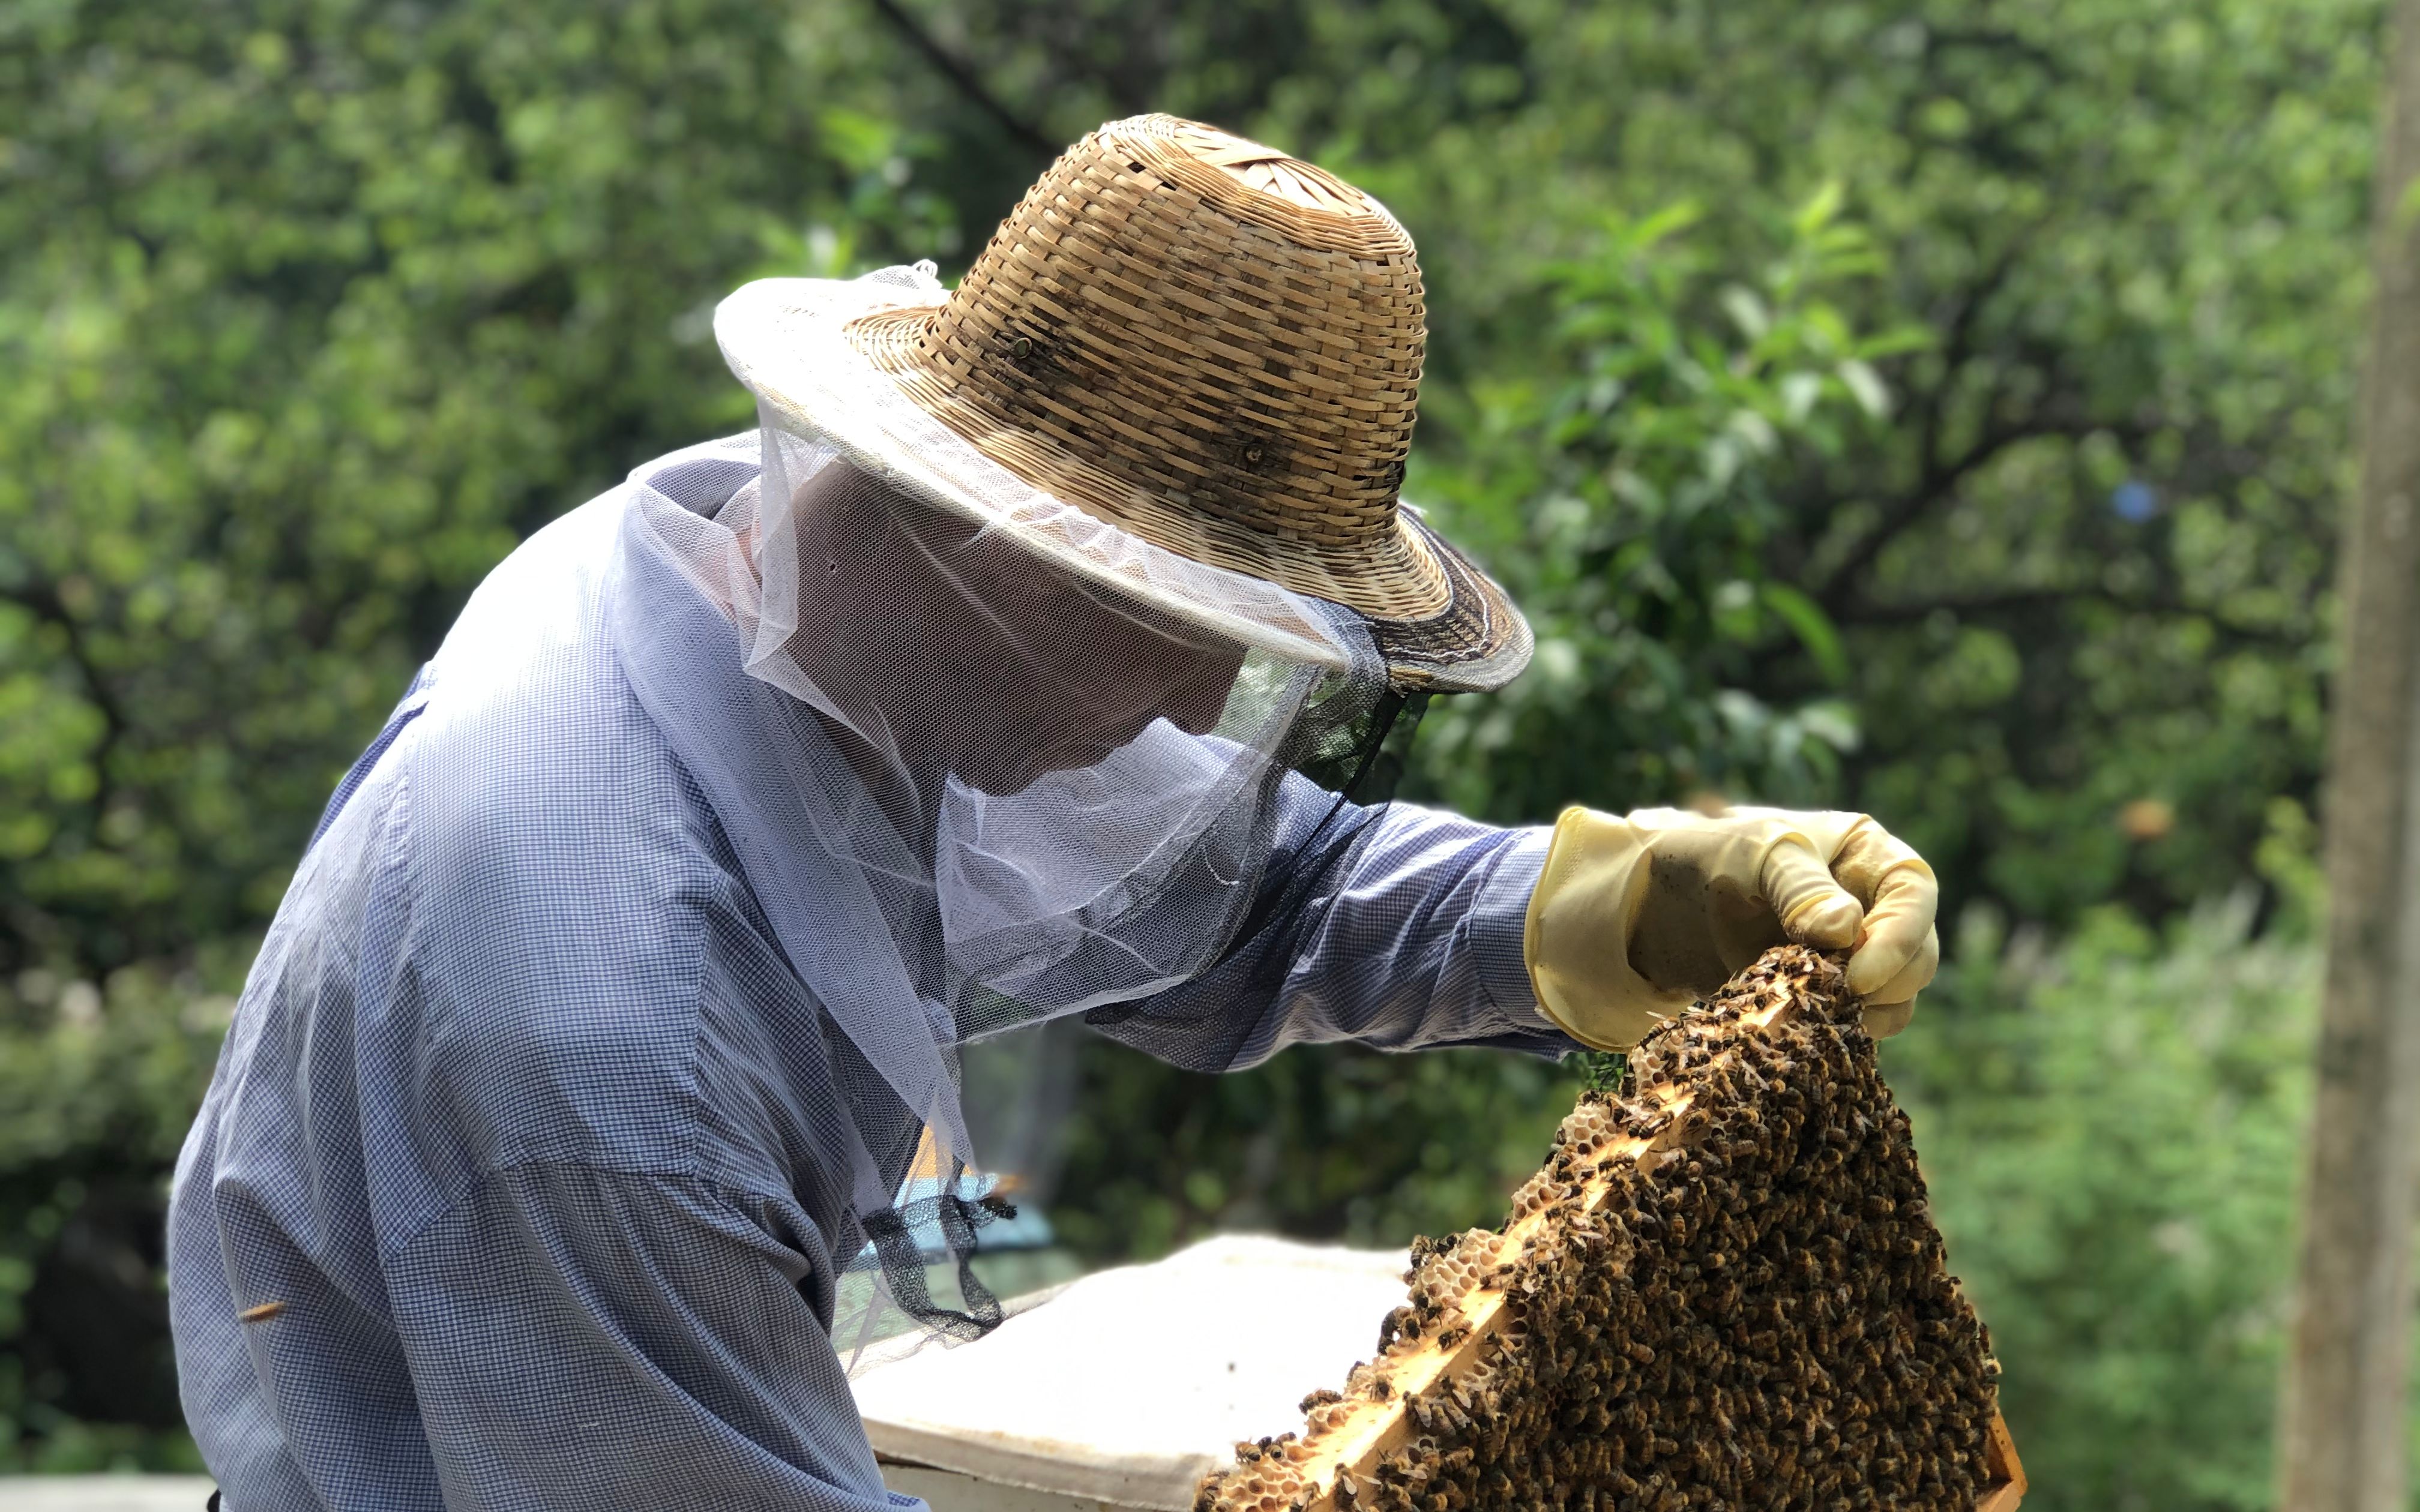 职业养蜂人金松图片